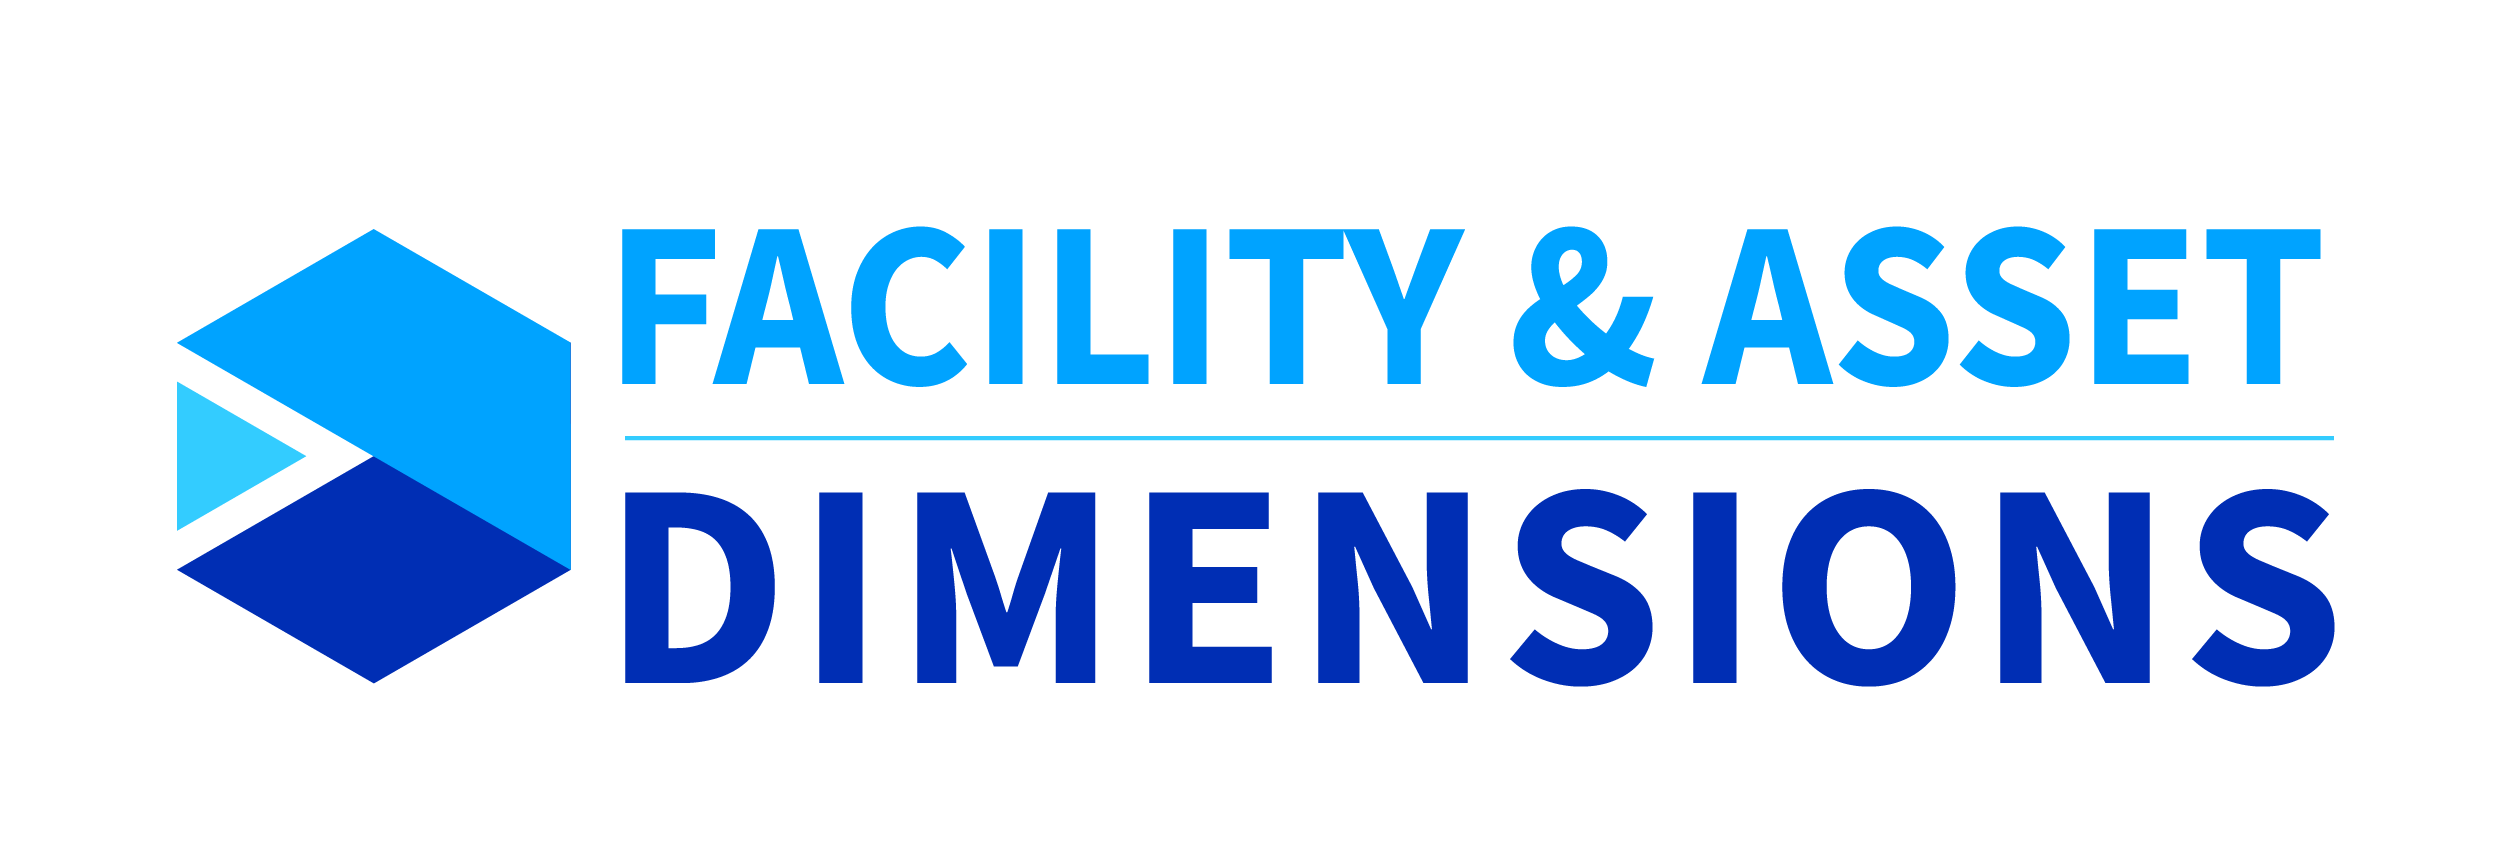 Acceltech Pte Ltd - Dimensiones de las instalaciones y los activos